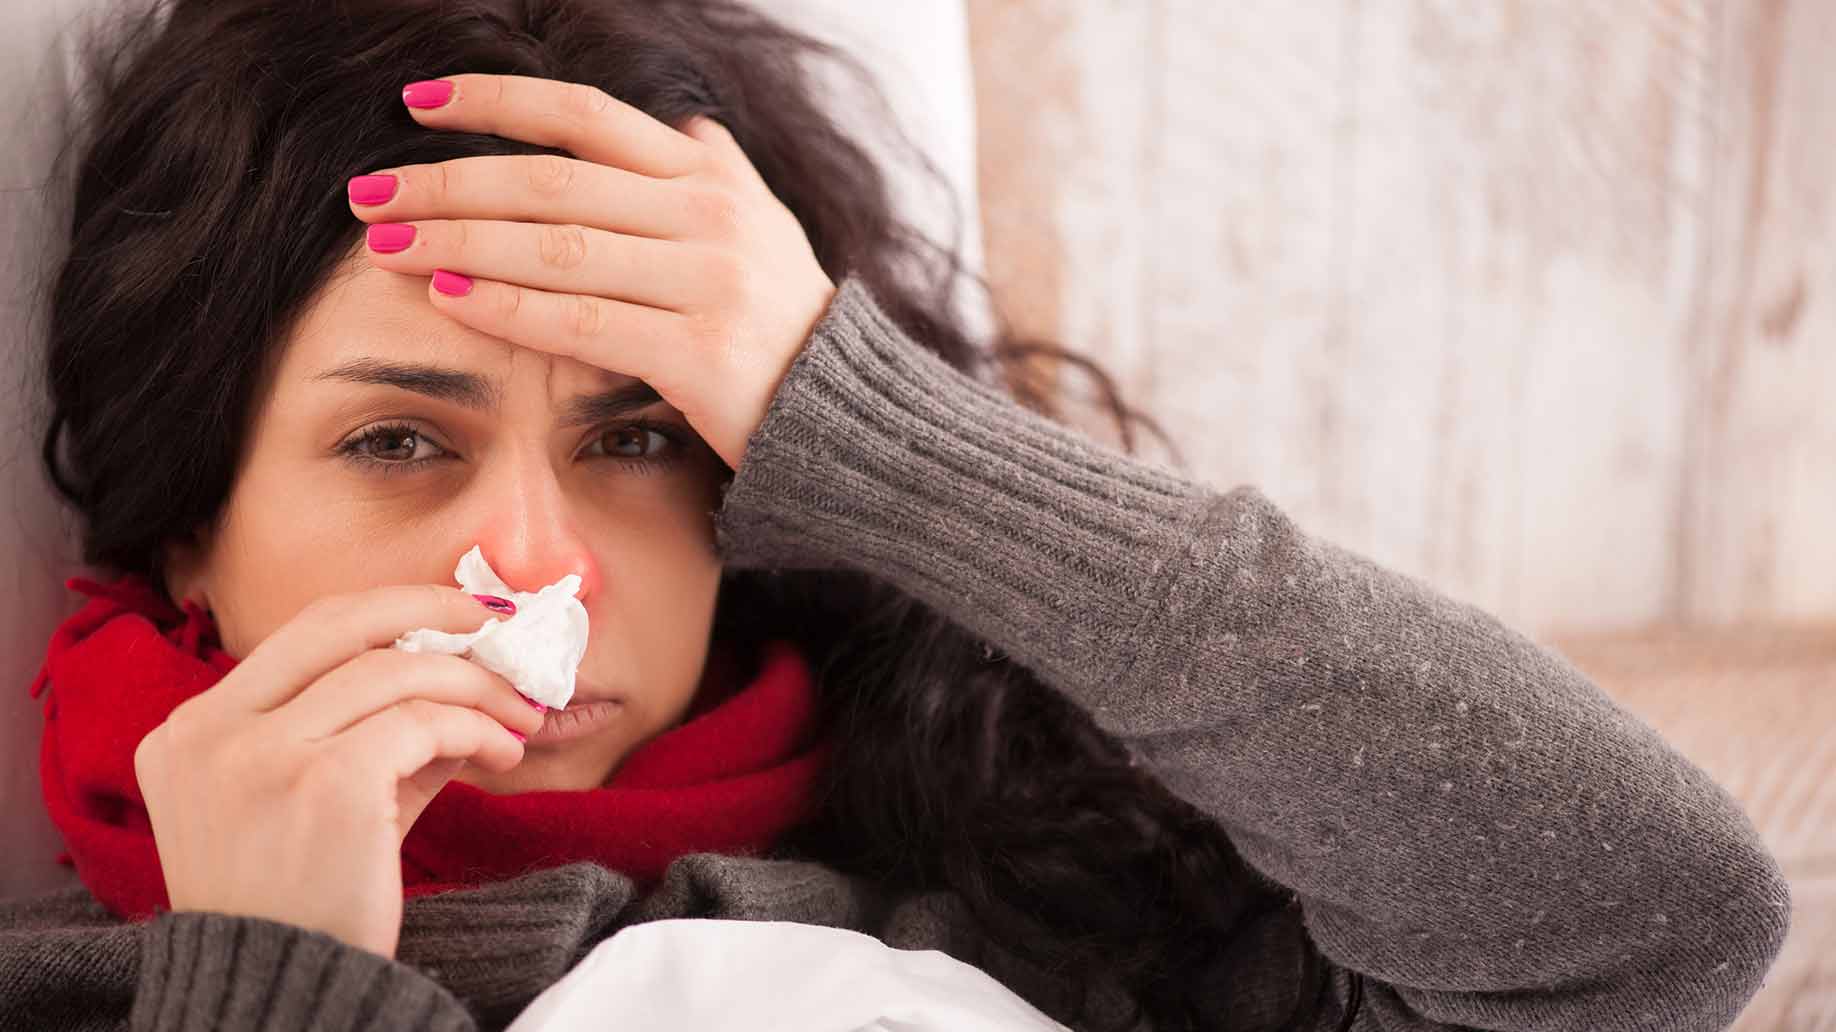 cold cough flu probiotics good bacteria natural flora gut health